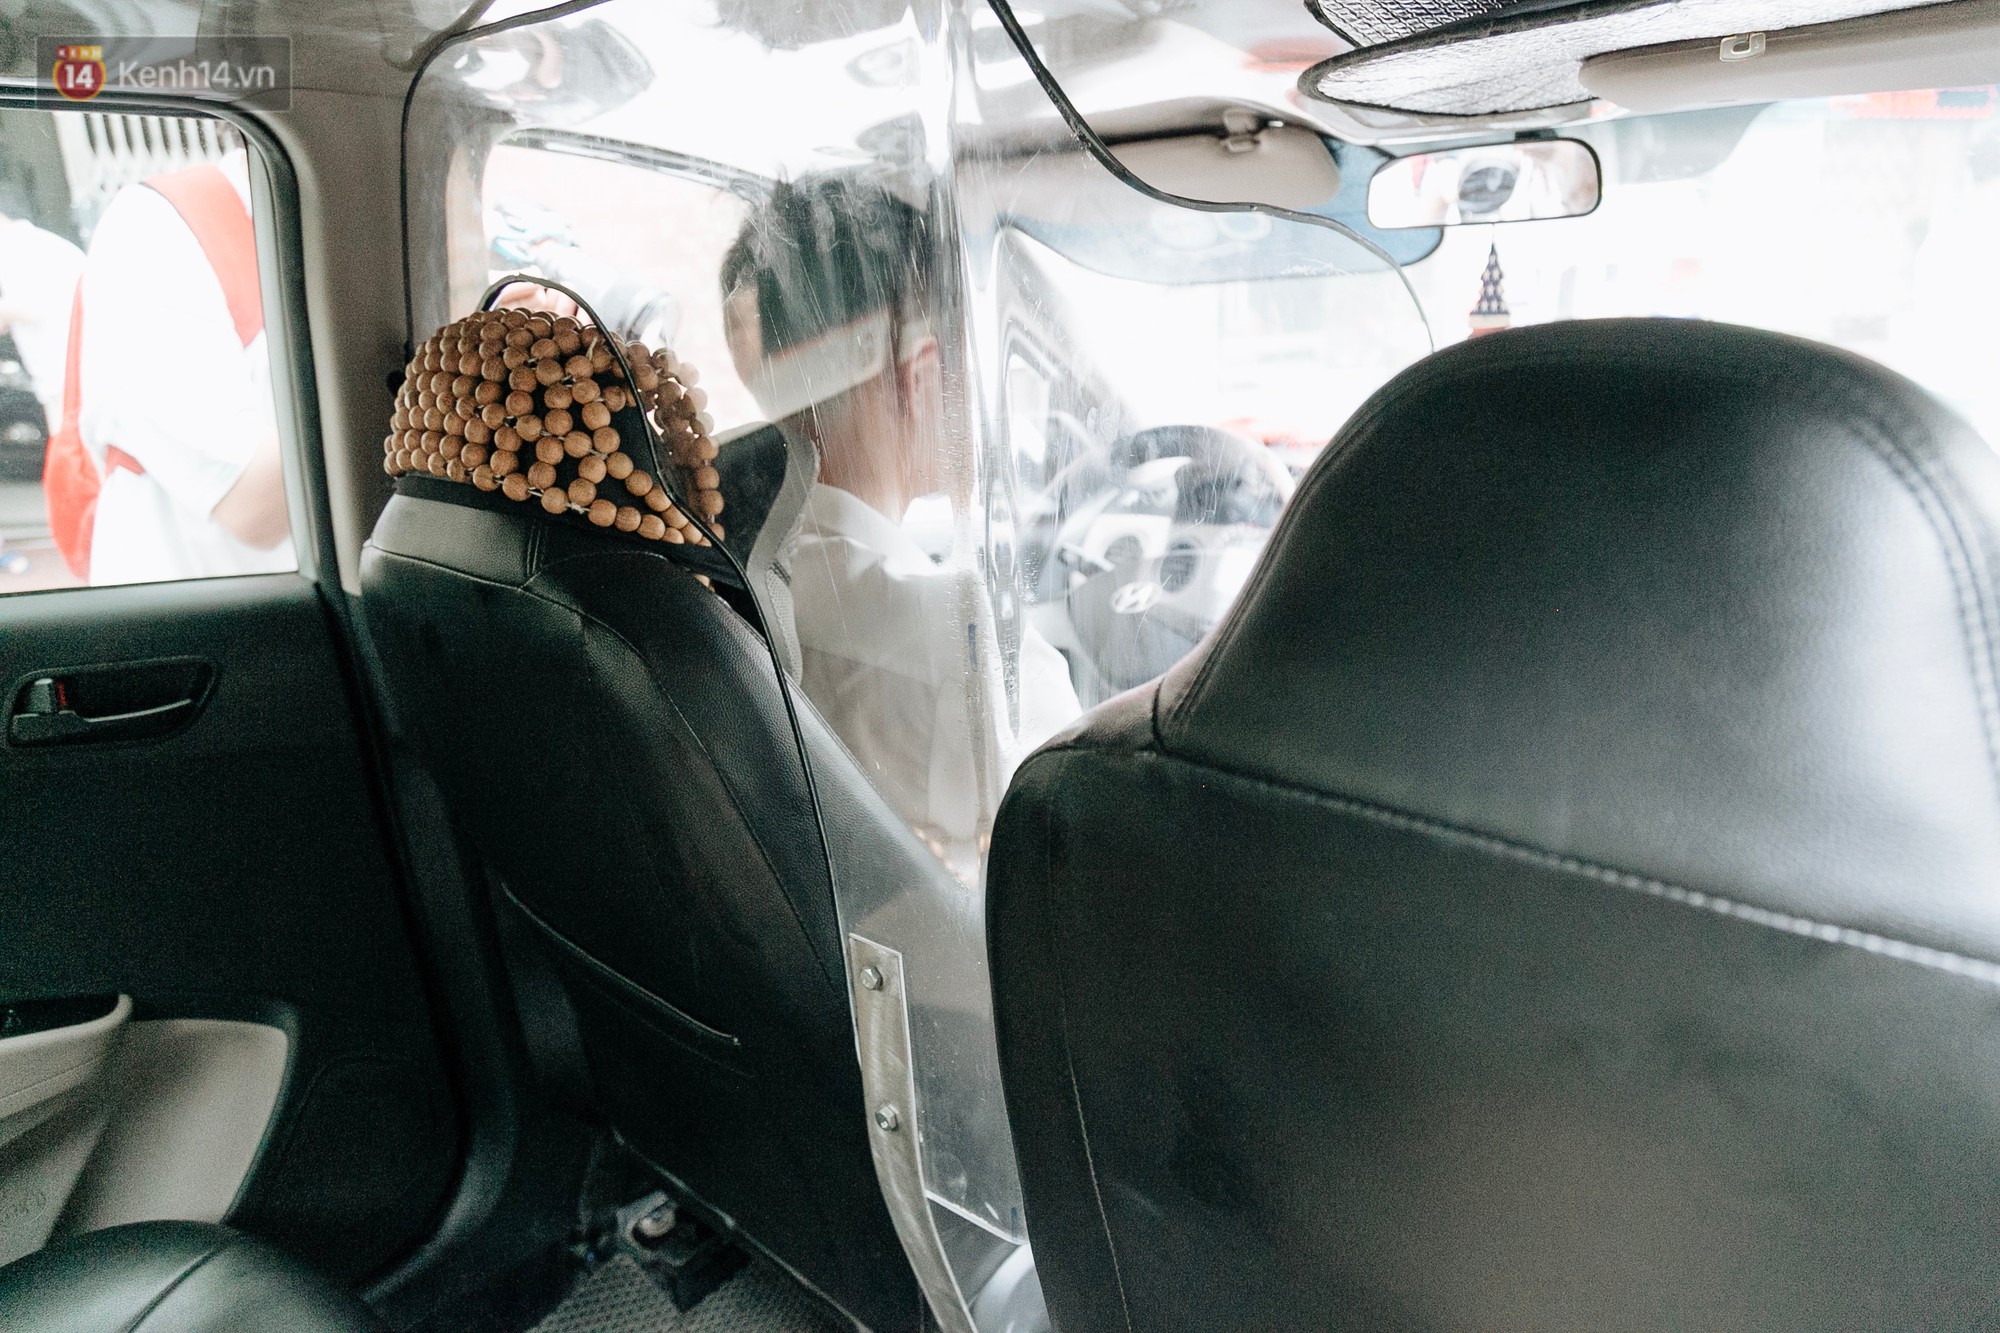 Người thiết kế vách ngăn bảo vệ cho tài xế taxi ở Hà Nội: Mình quan tâm nhất là tính mạng của họ, vì mình cũng từng là tài xế!-7